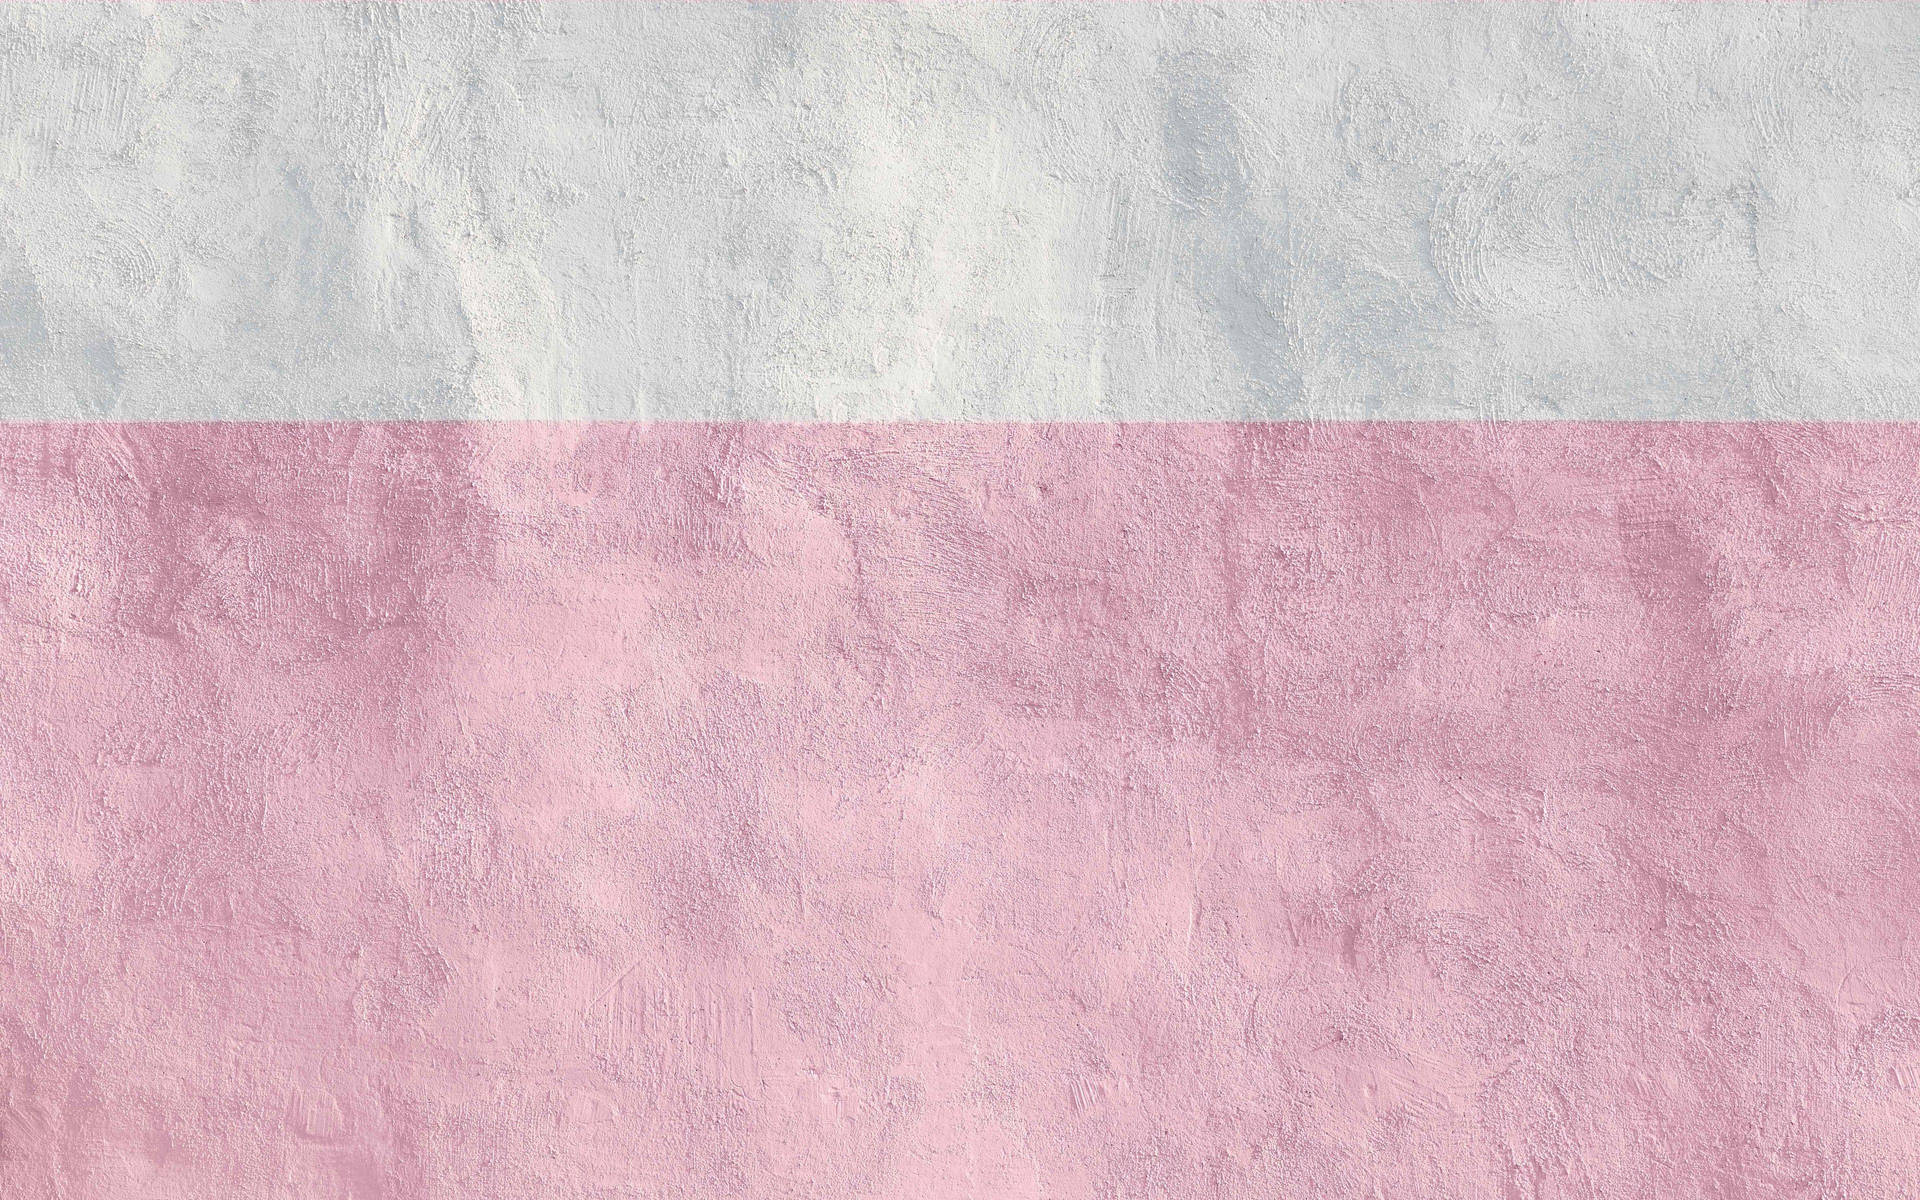 Vibrante pink og hvide striber skaber et unikt øje-fangende design. Wallpaper